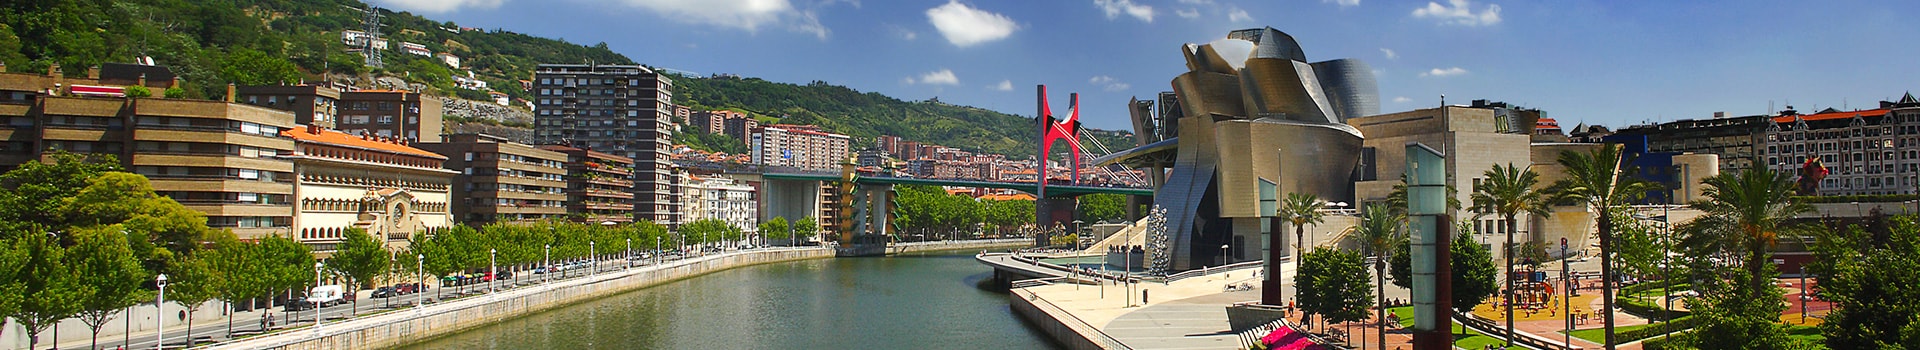 Genebra - Bilbao